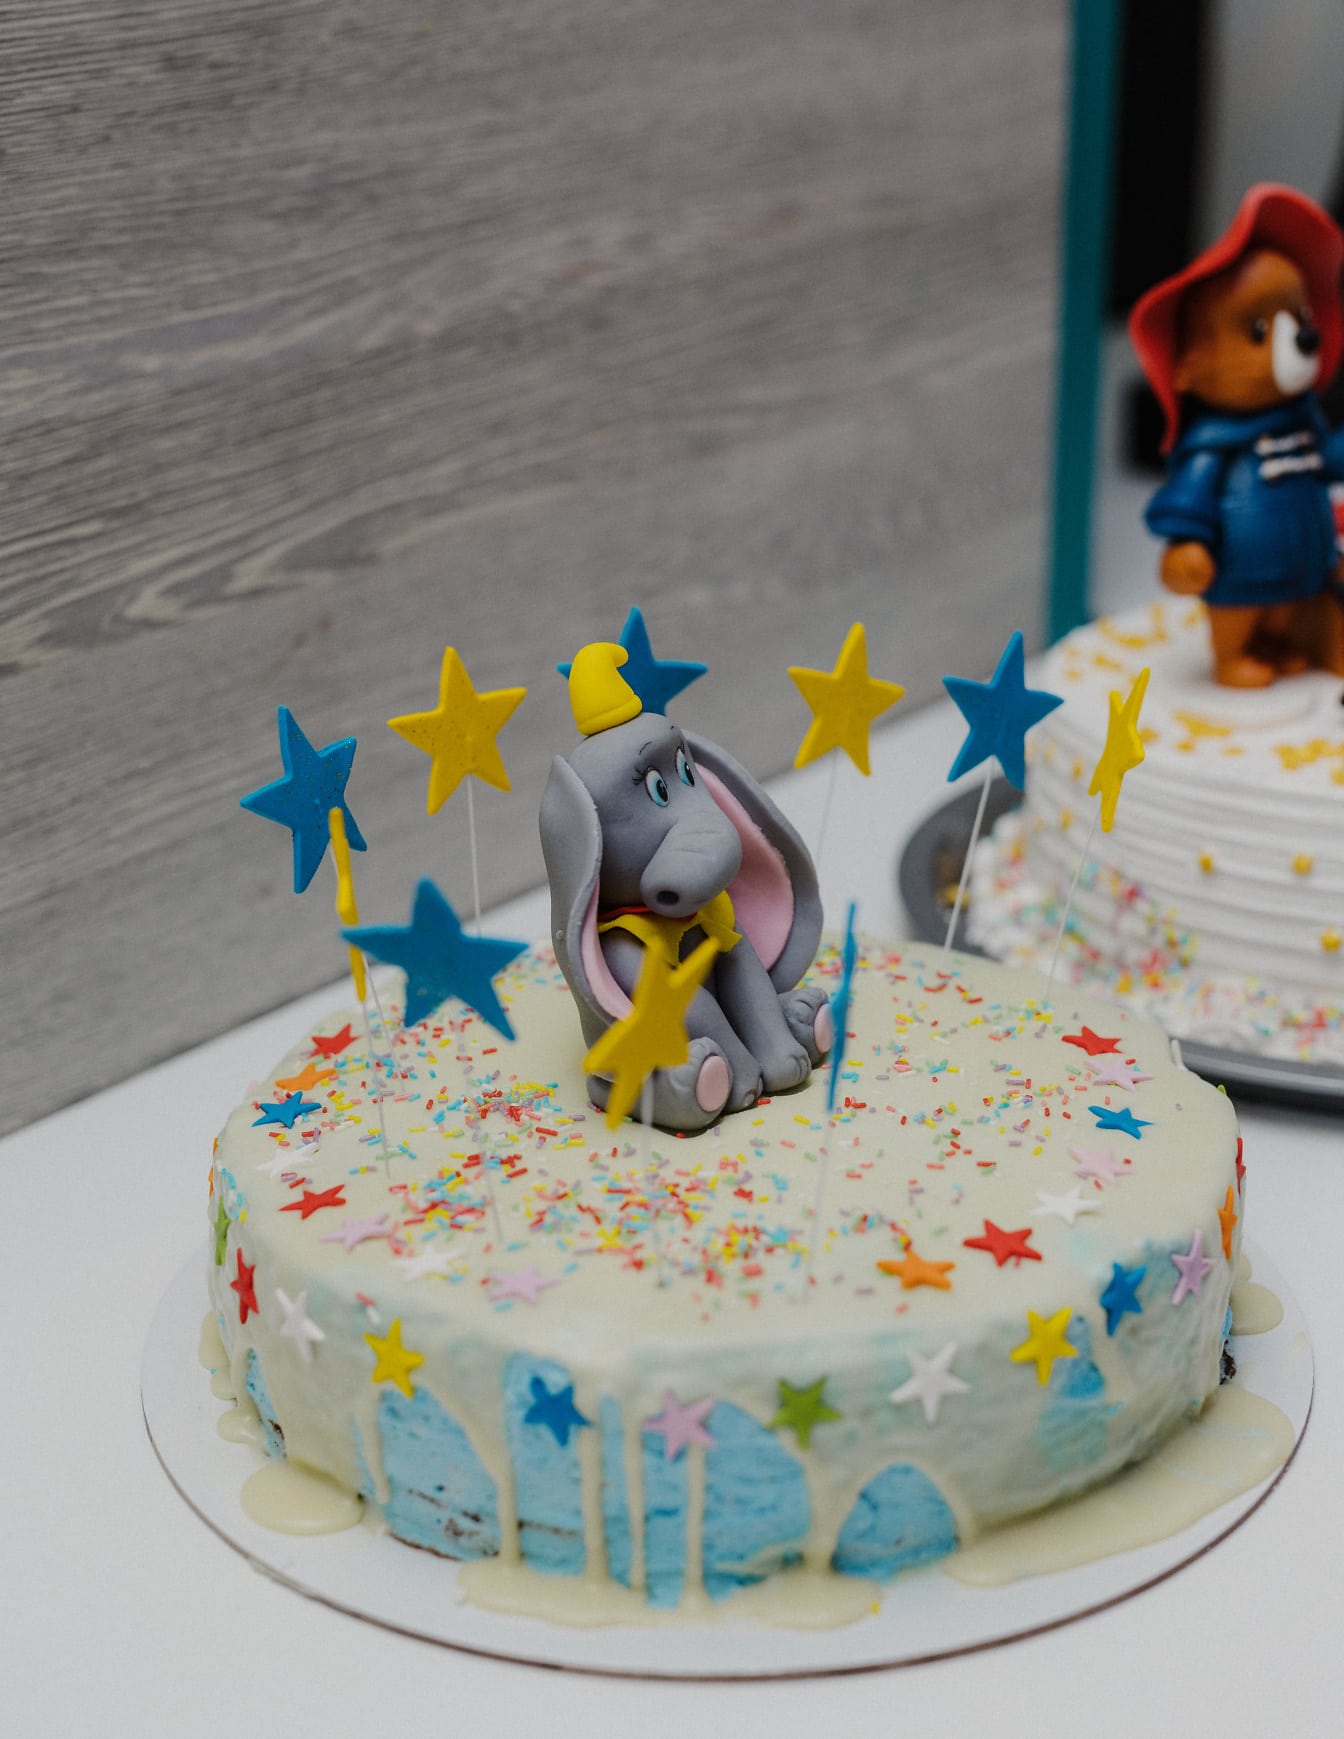 Bursdagskake med elefantdekorasjon og blå og gule stjerner